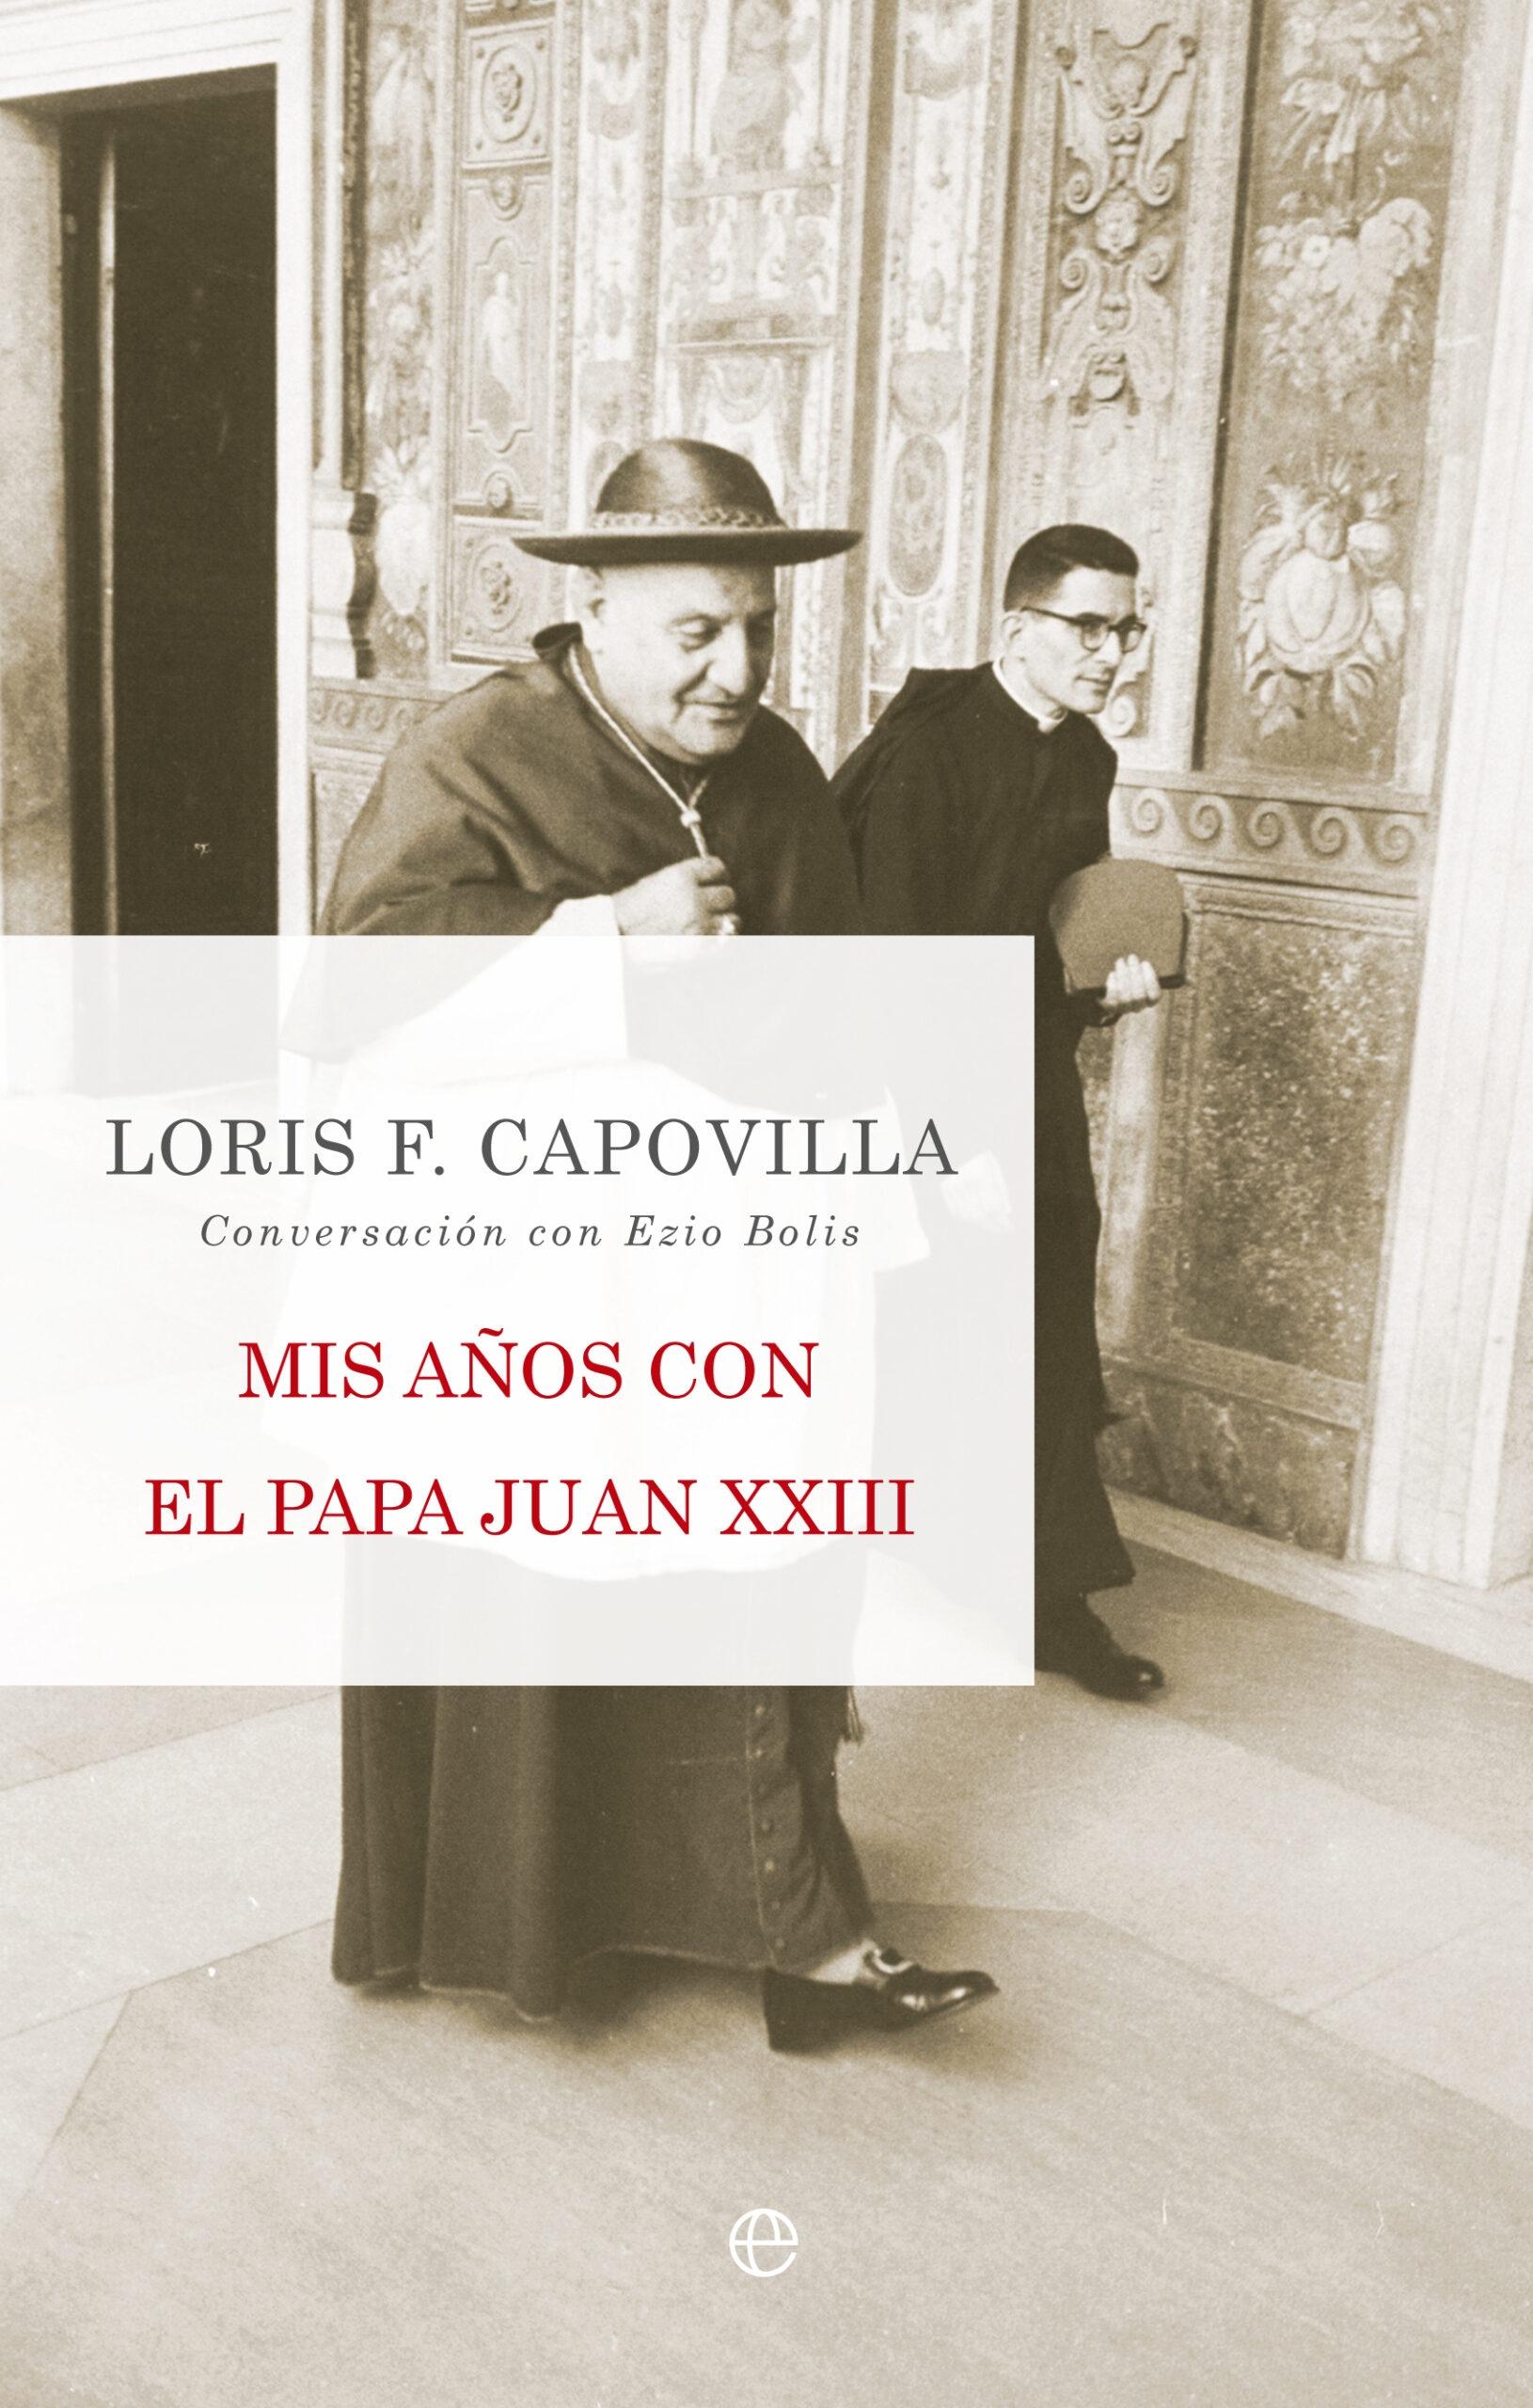 Mis años con el Papa Juan XXIII "Conversación con Ezio Bolis"